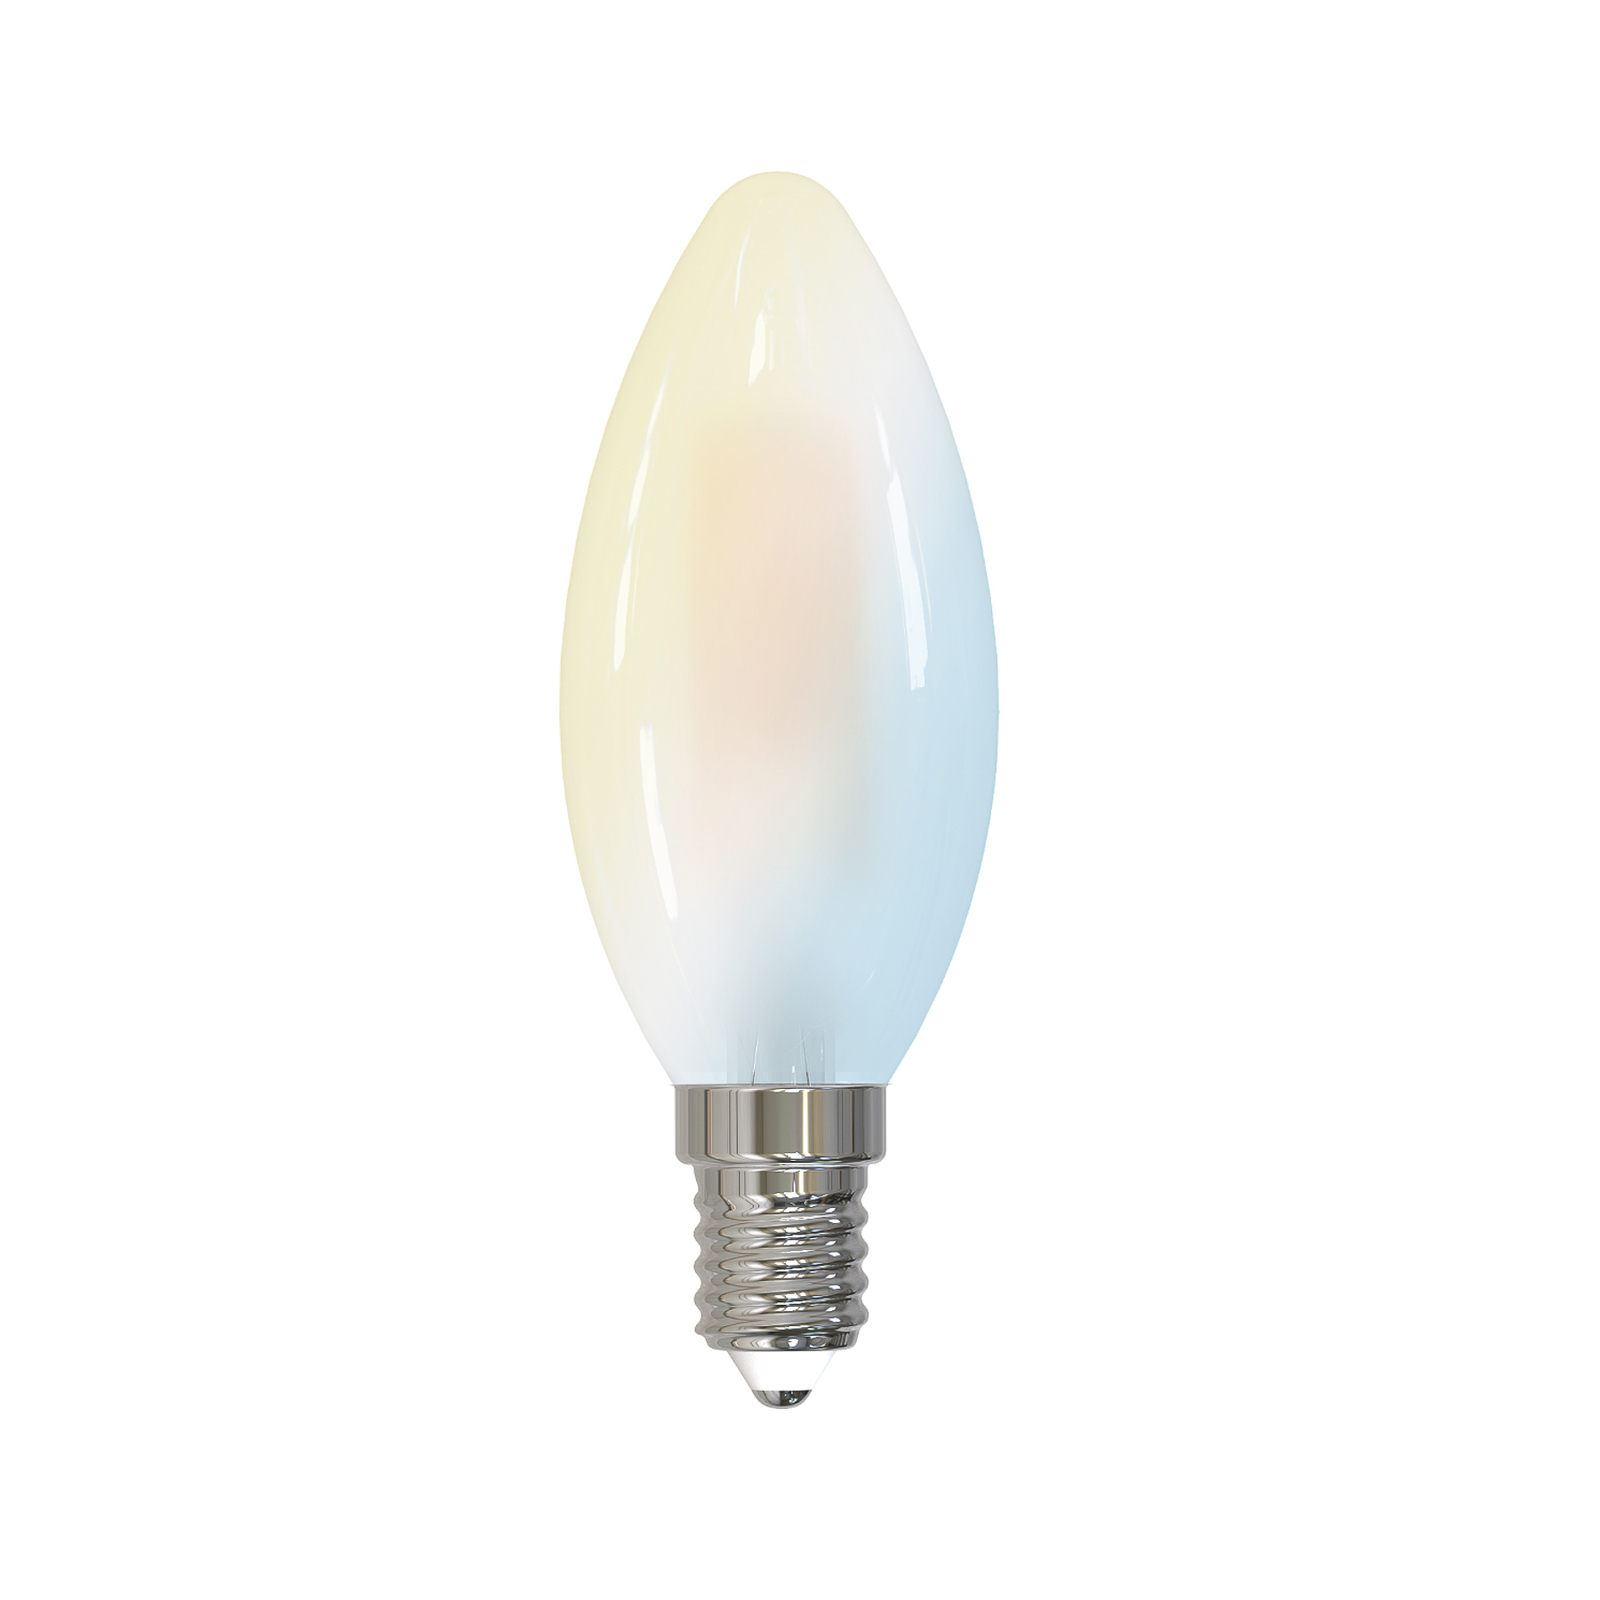 Smart vela LED E14 4,2W WLAN mate tunable white